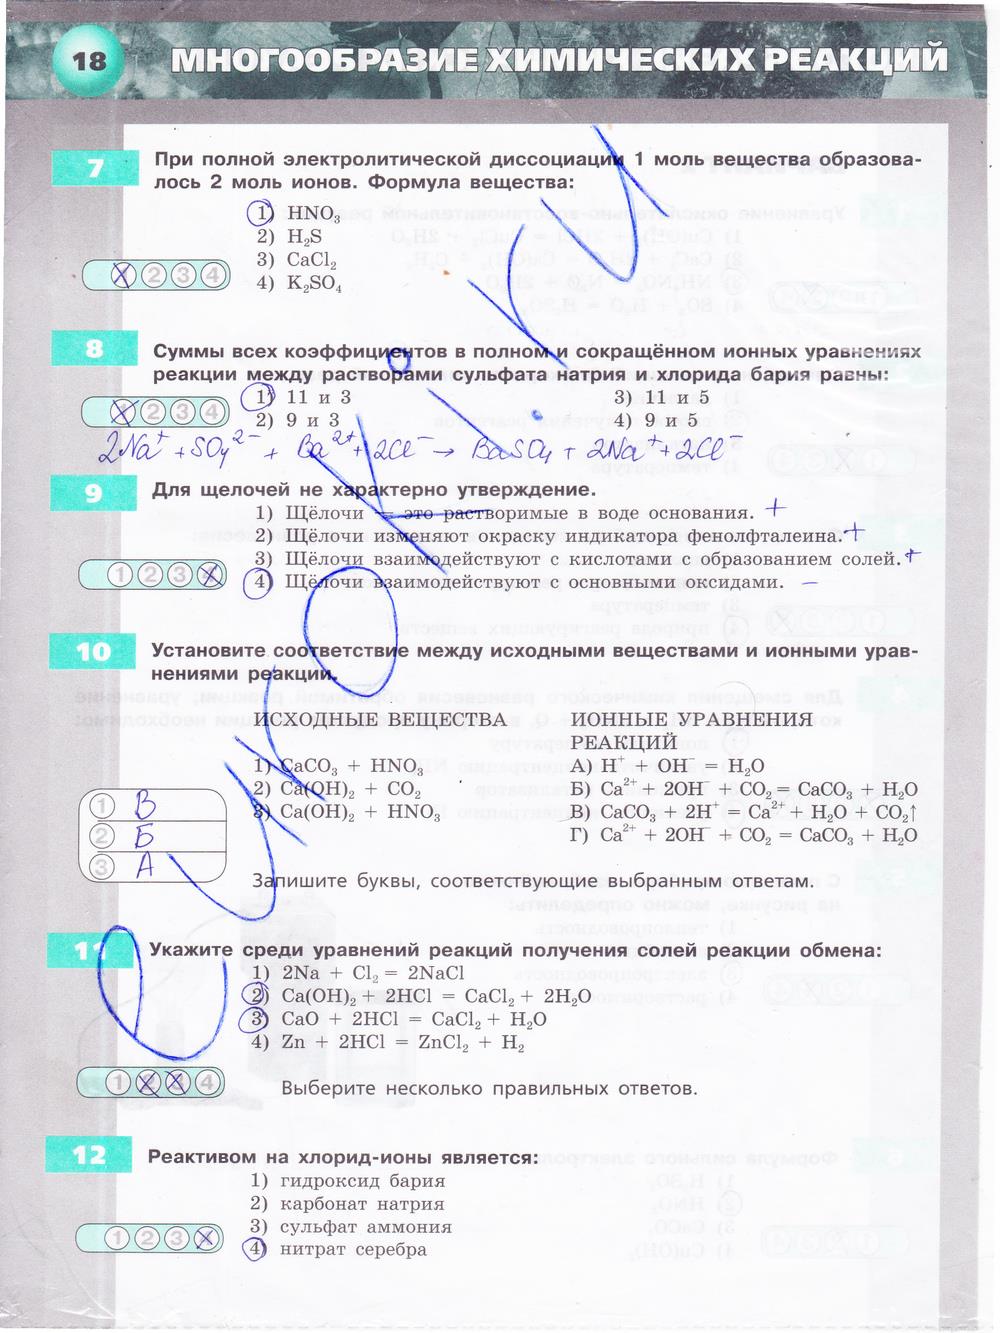 гдз 9 класс тетрадь-экзаменатор страница 18 химия Бобылева, Бирюлина